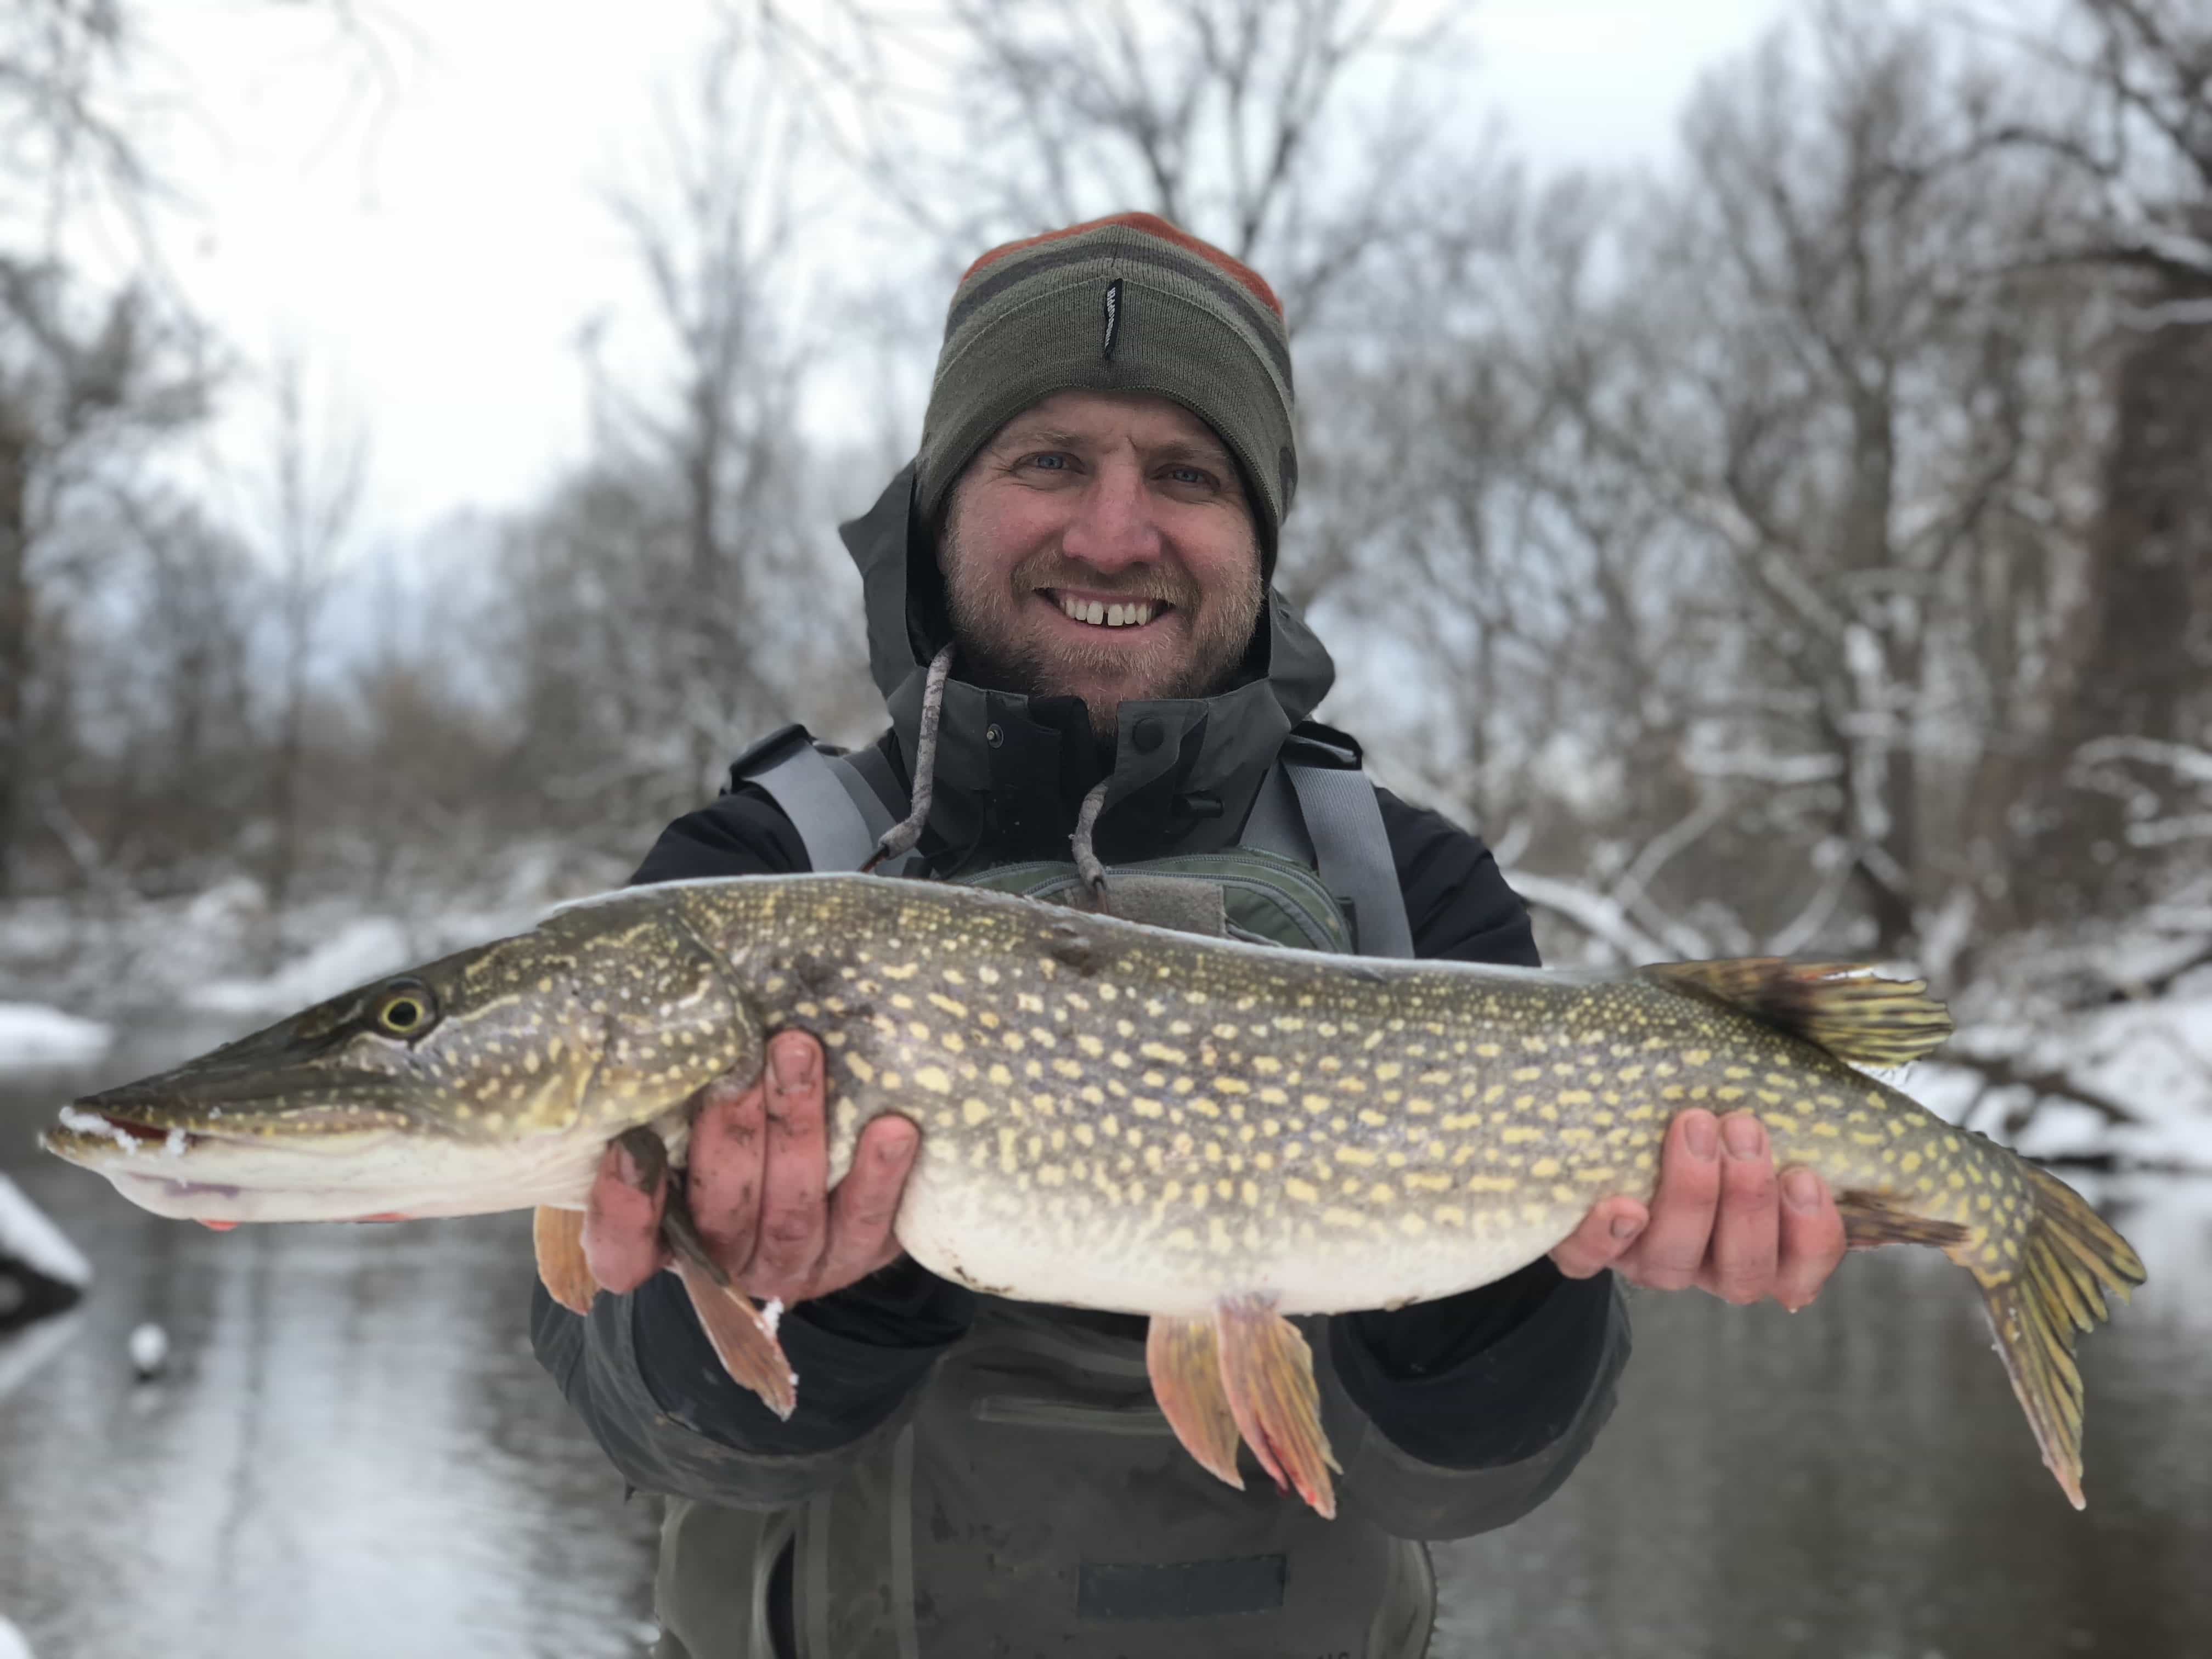 20180314 173501297 iOS - Winter Charter Fishing in Buffalo Niagara